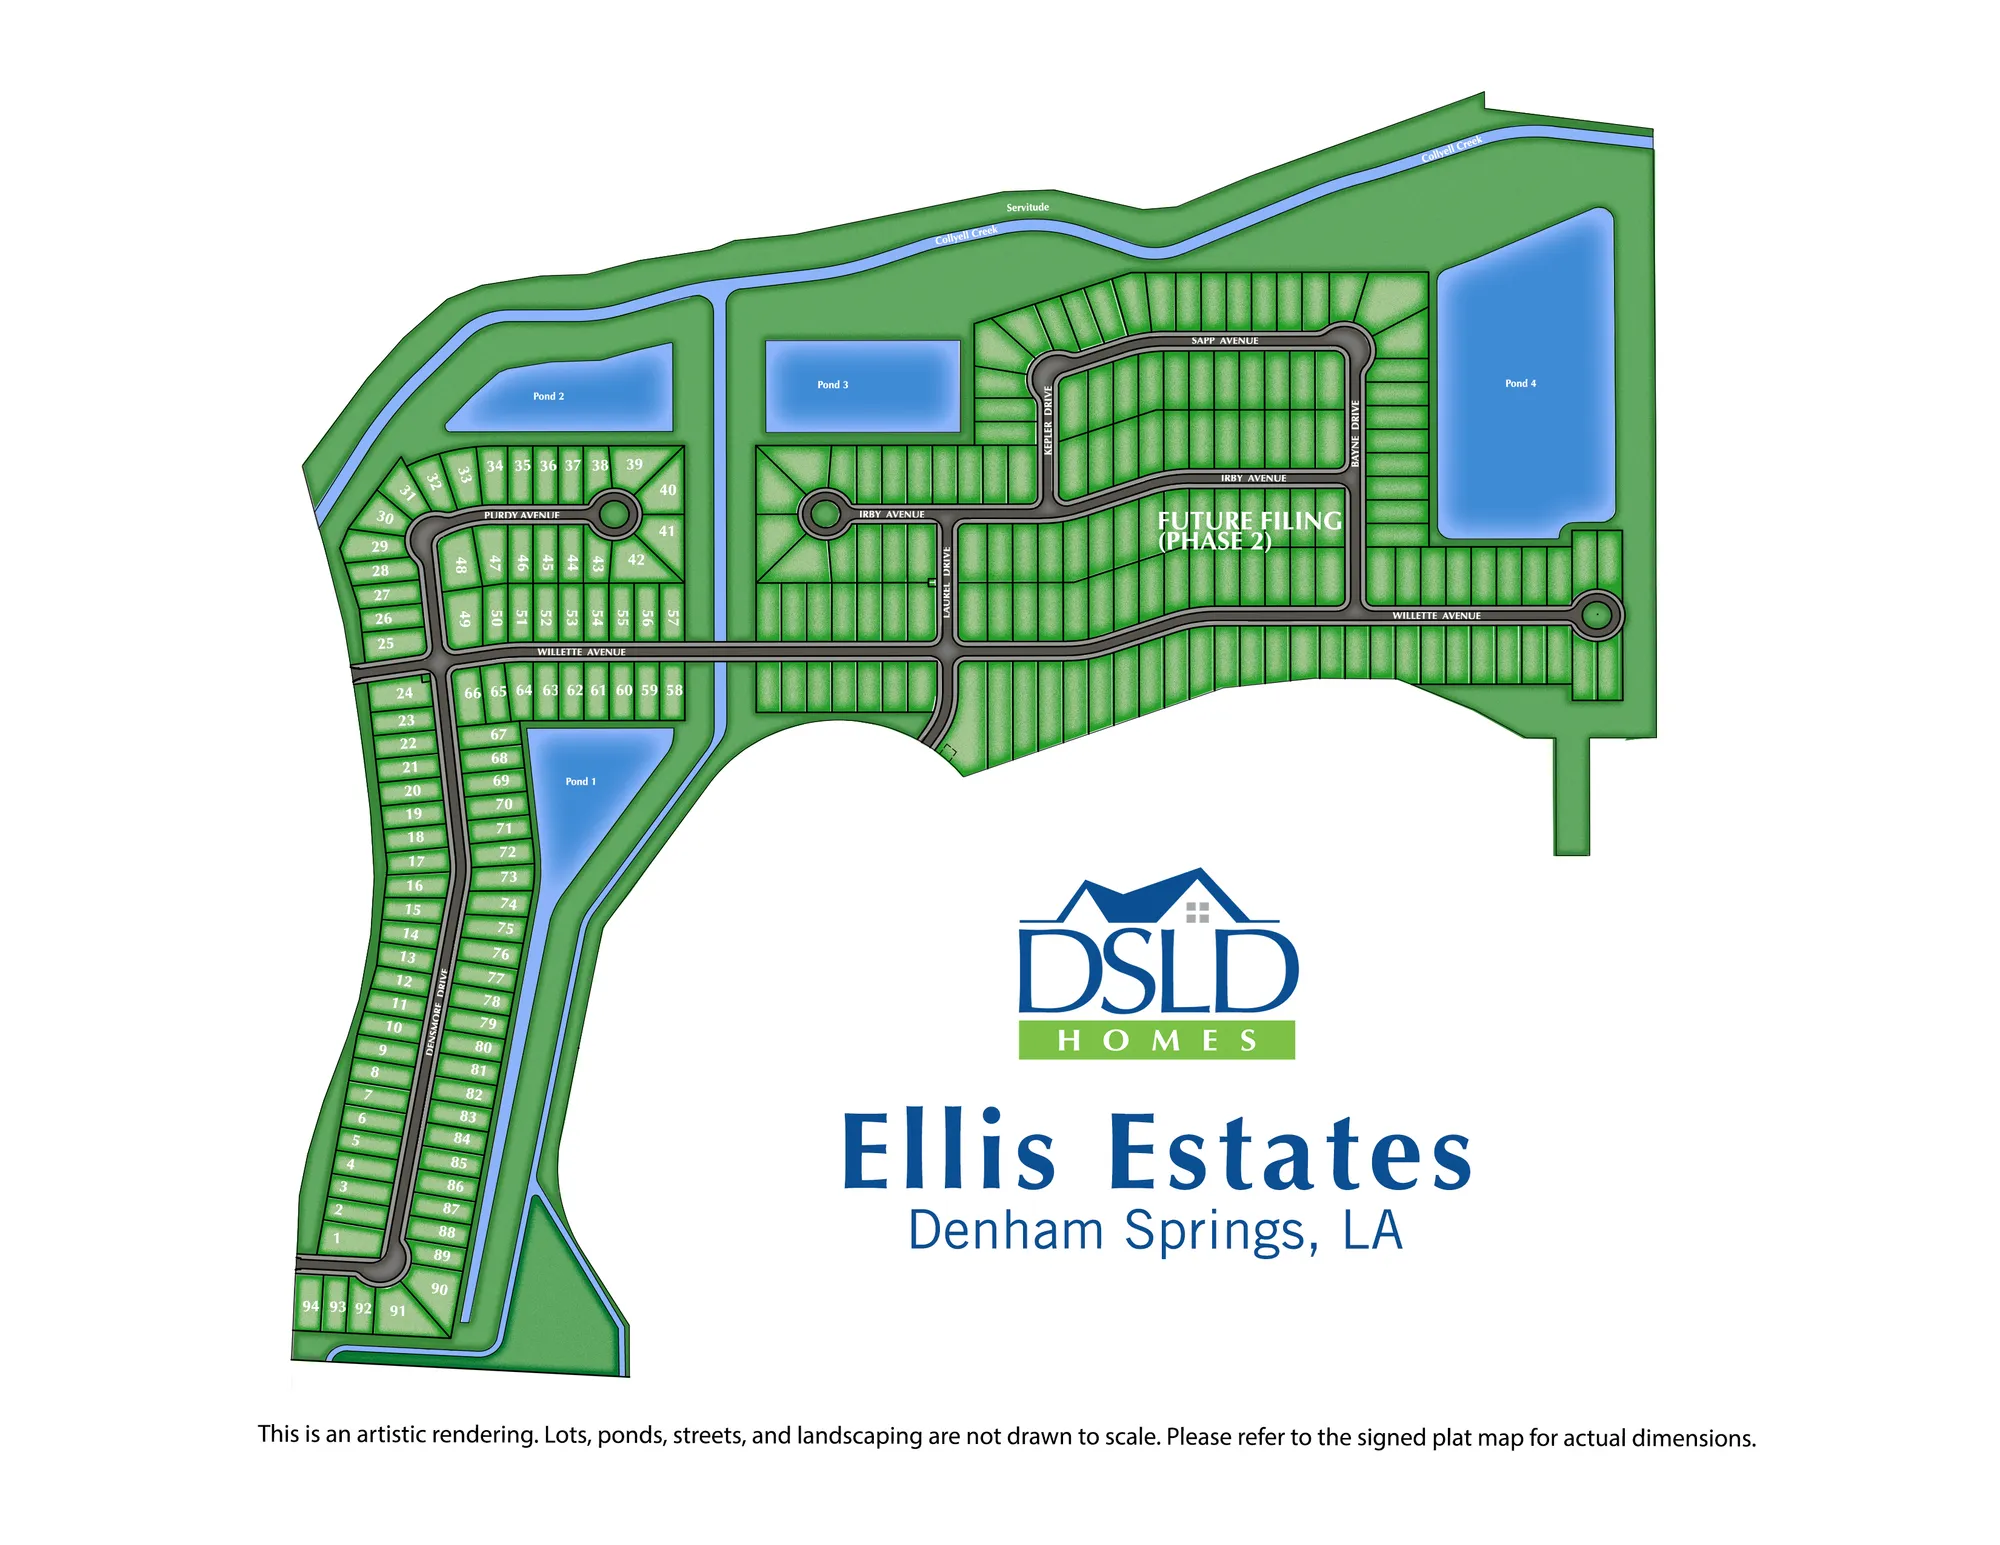 Ellis Estates